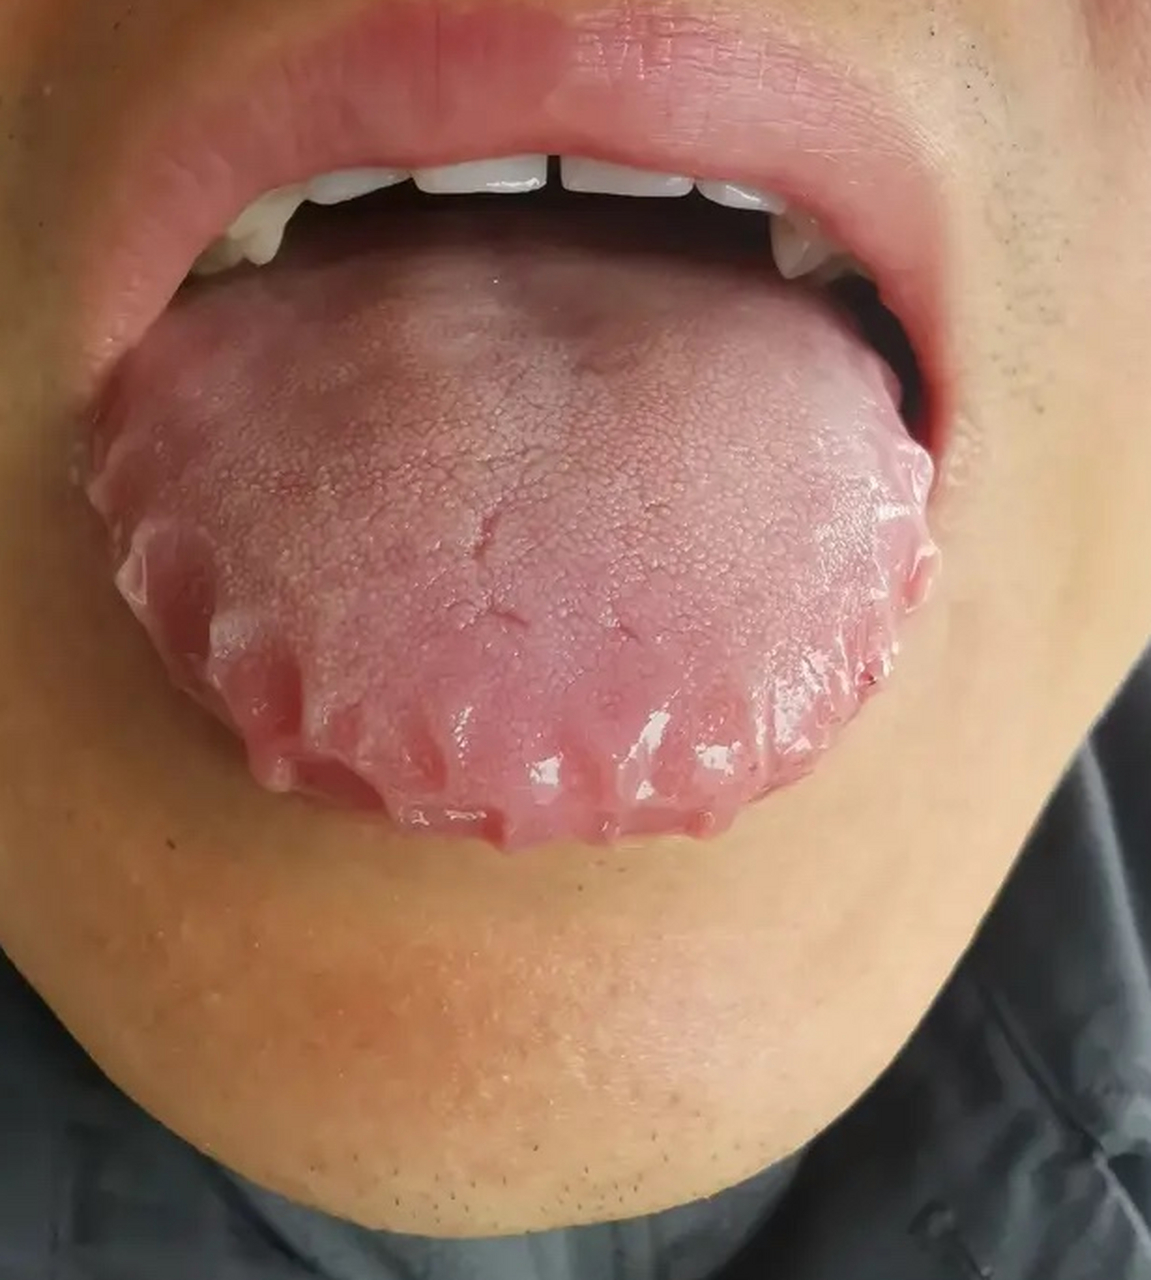 这齿痕舌的严重程度,已经远非简单的祛湿所能解决